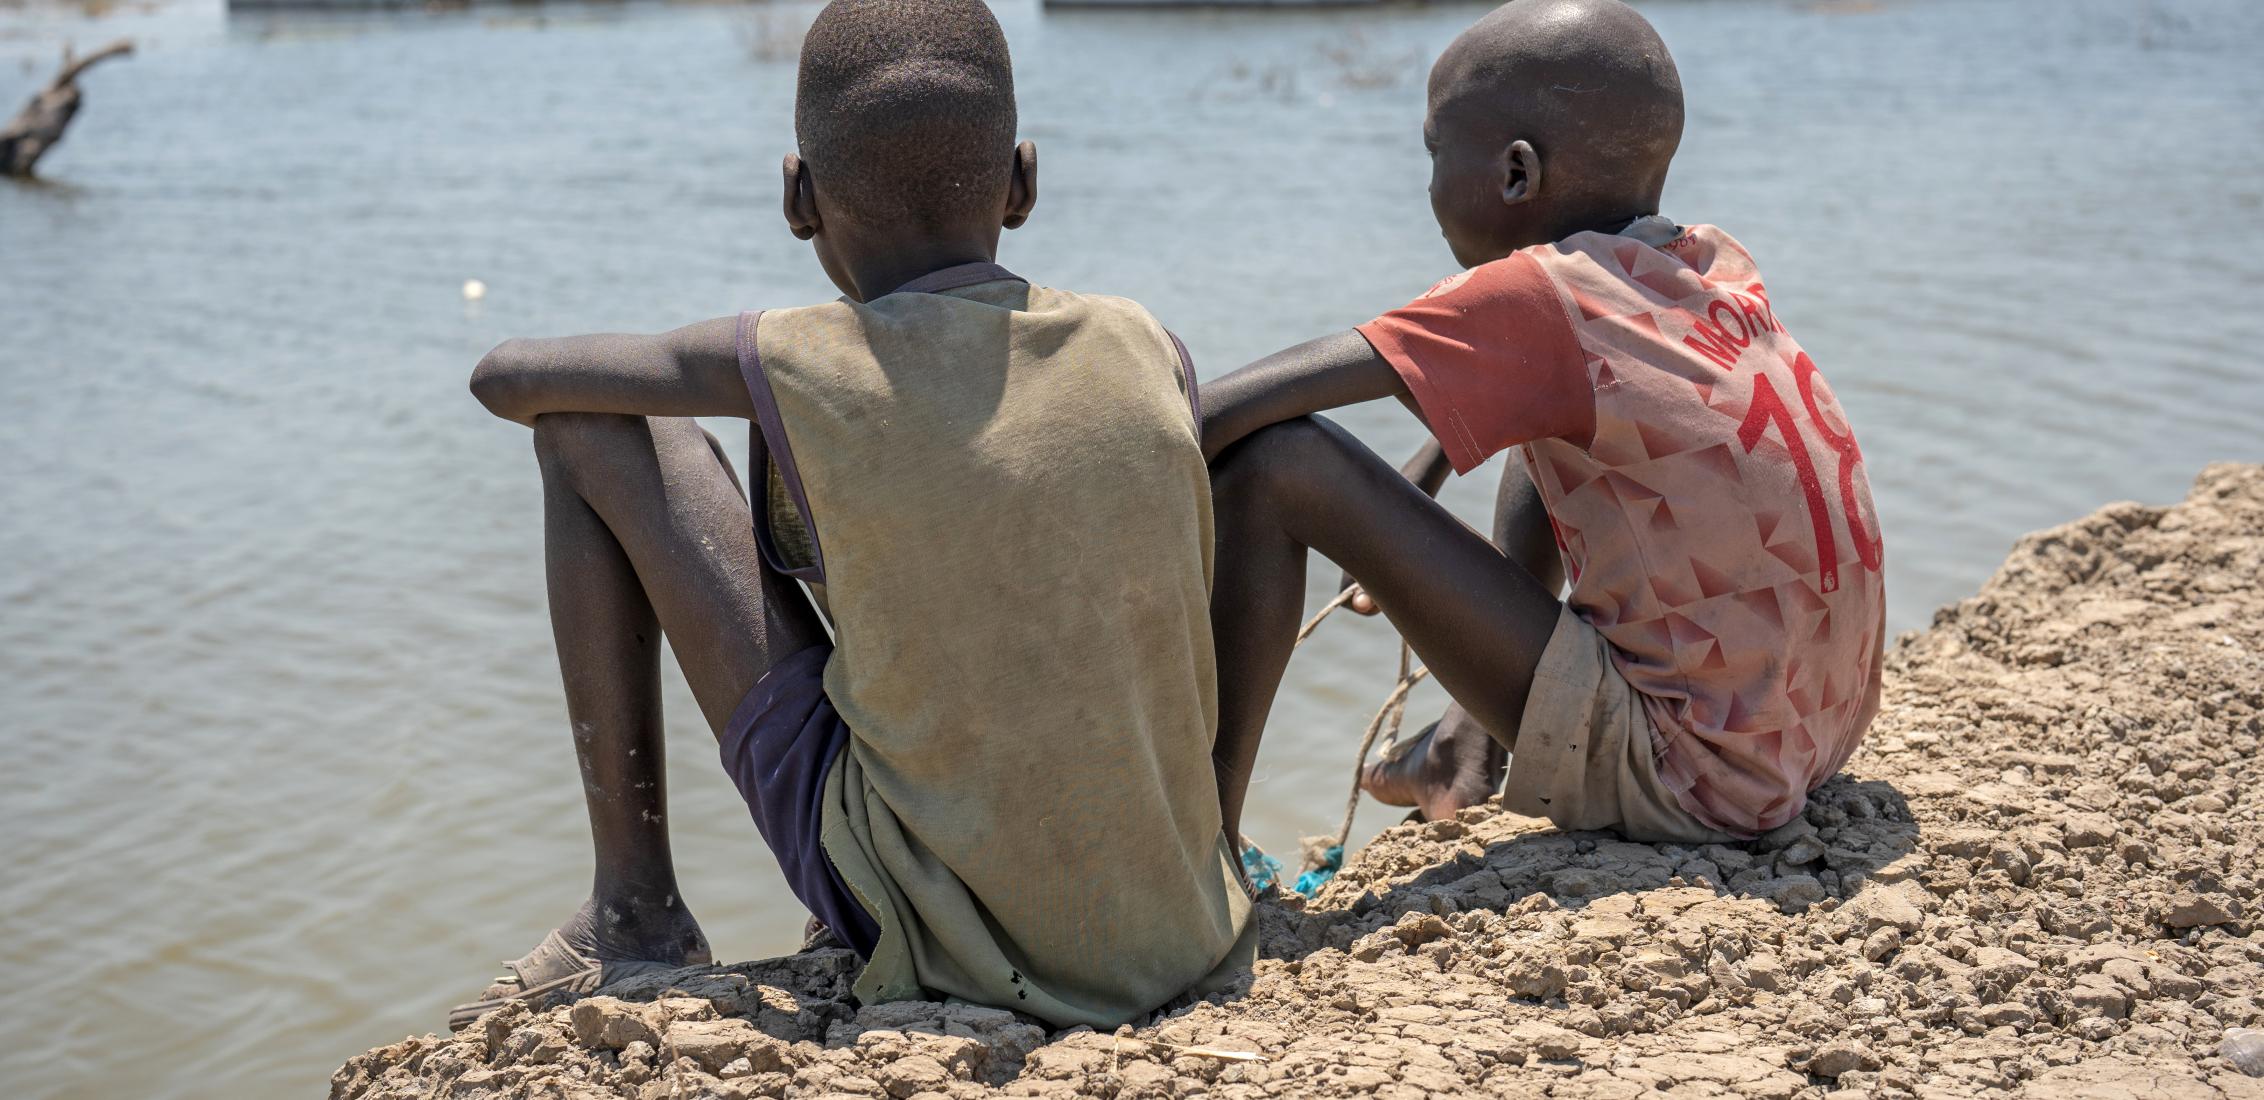 UNI424890/Naftalin El 4 de marzo de 2023, dos niños contemplan su escuela inundada en Bentiu, estado de Unidad, Sudán del Sur. Las extensas inundaciones han afectado a miles de personas en todo el estado de Unidad, y muchas han tenido que abandonar sus hogares.